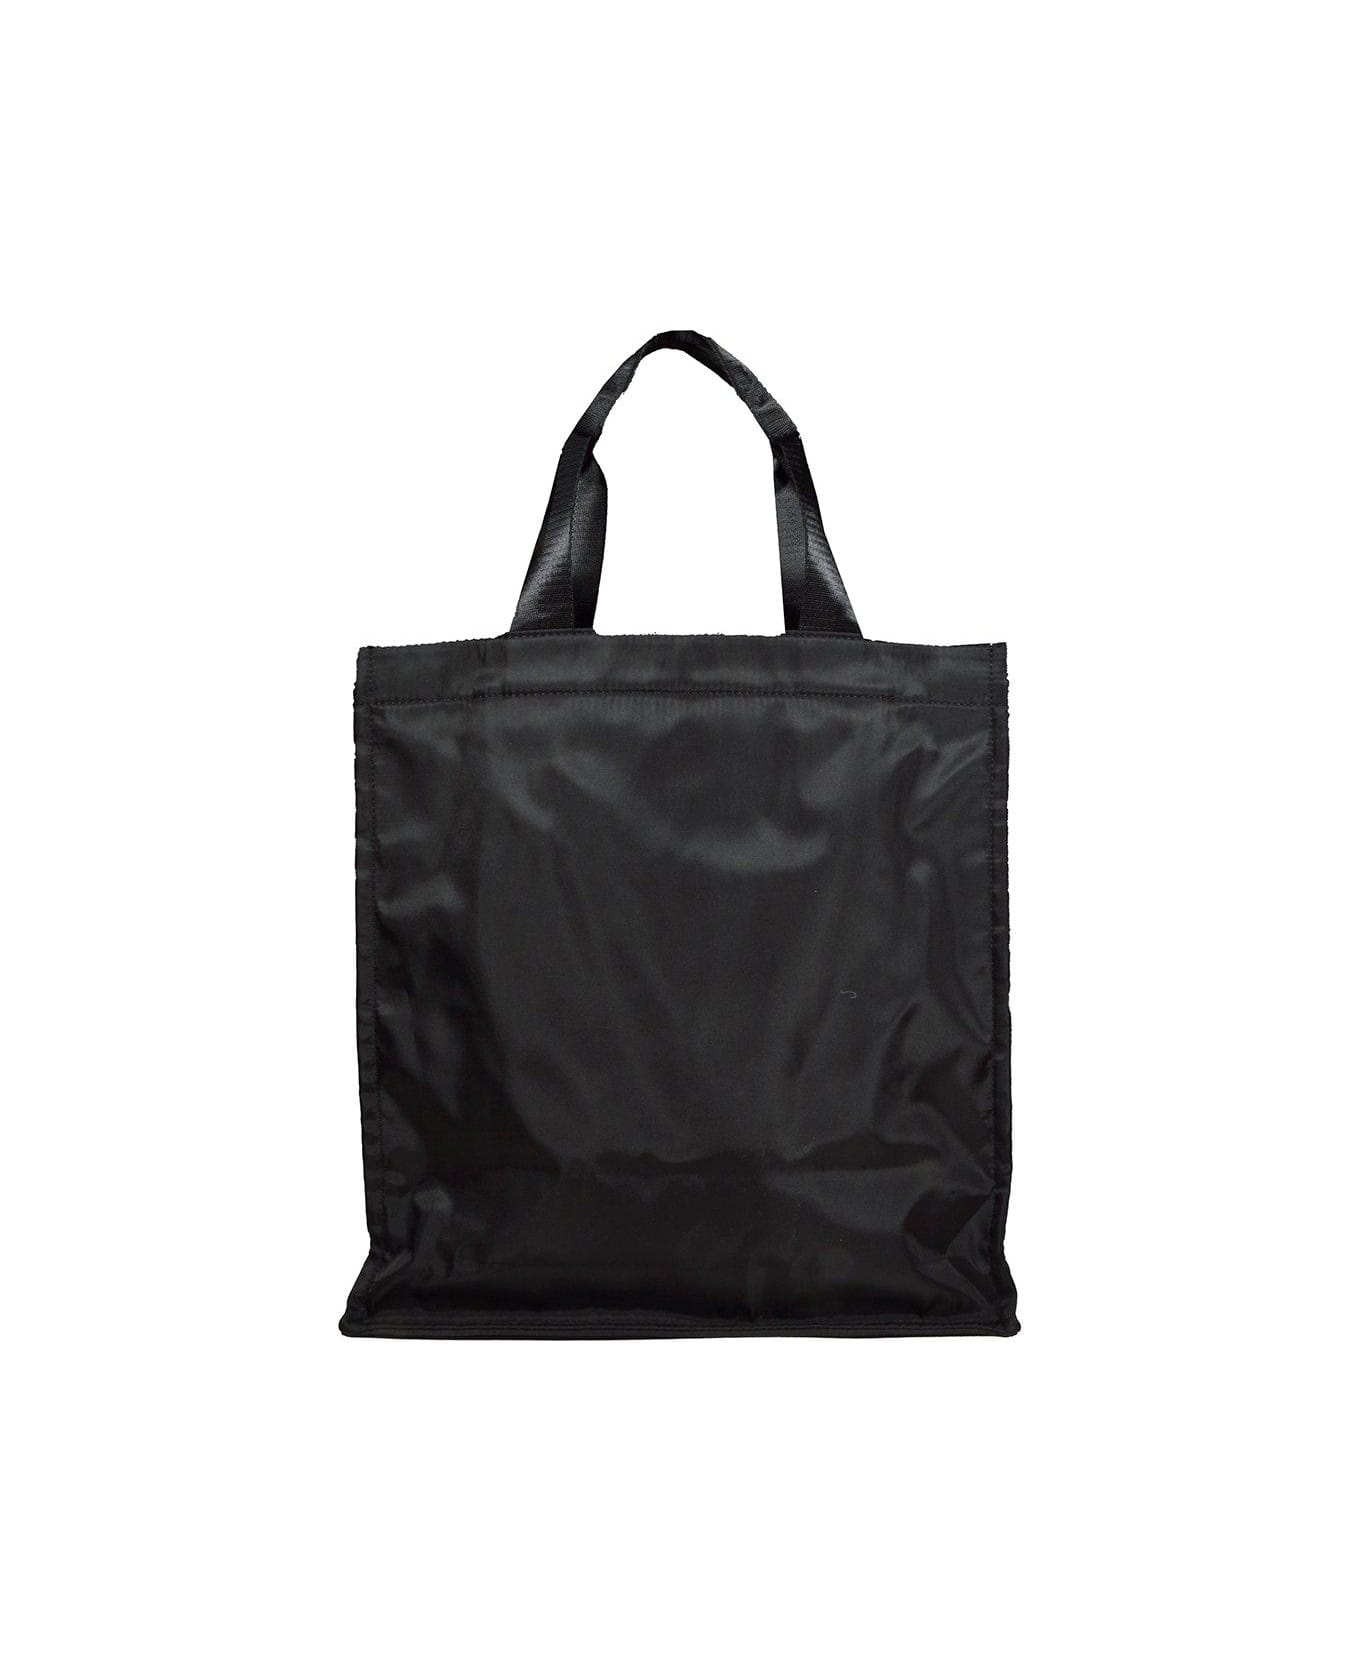 MSGM Logo Printed Top Handle Bag - Nero